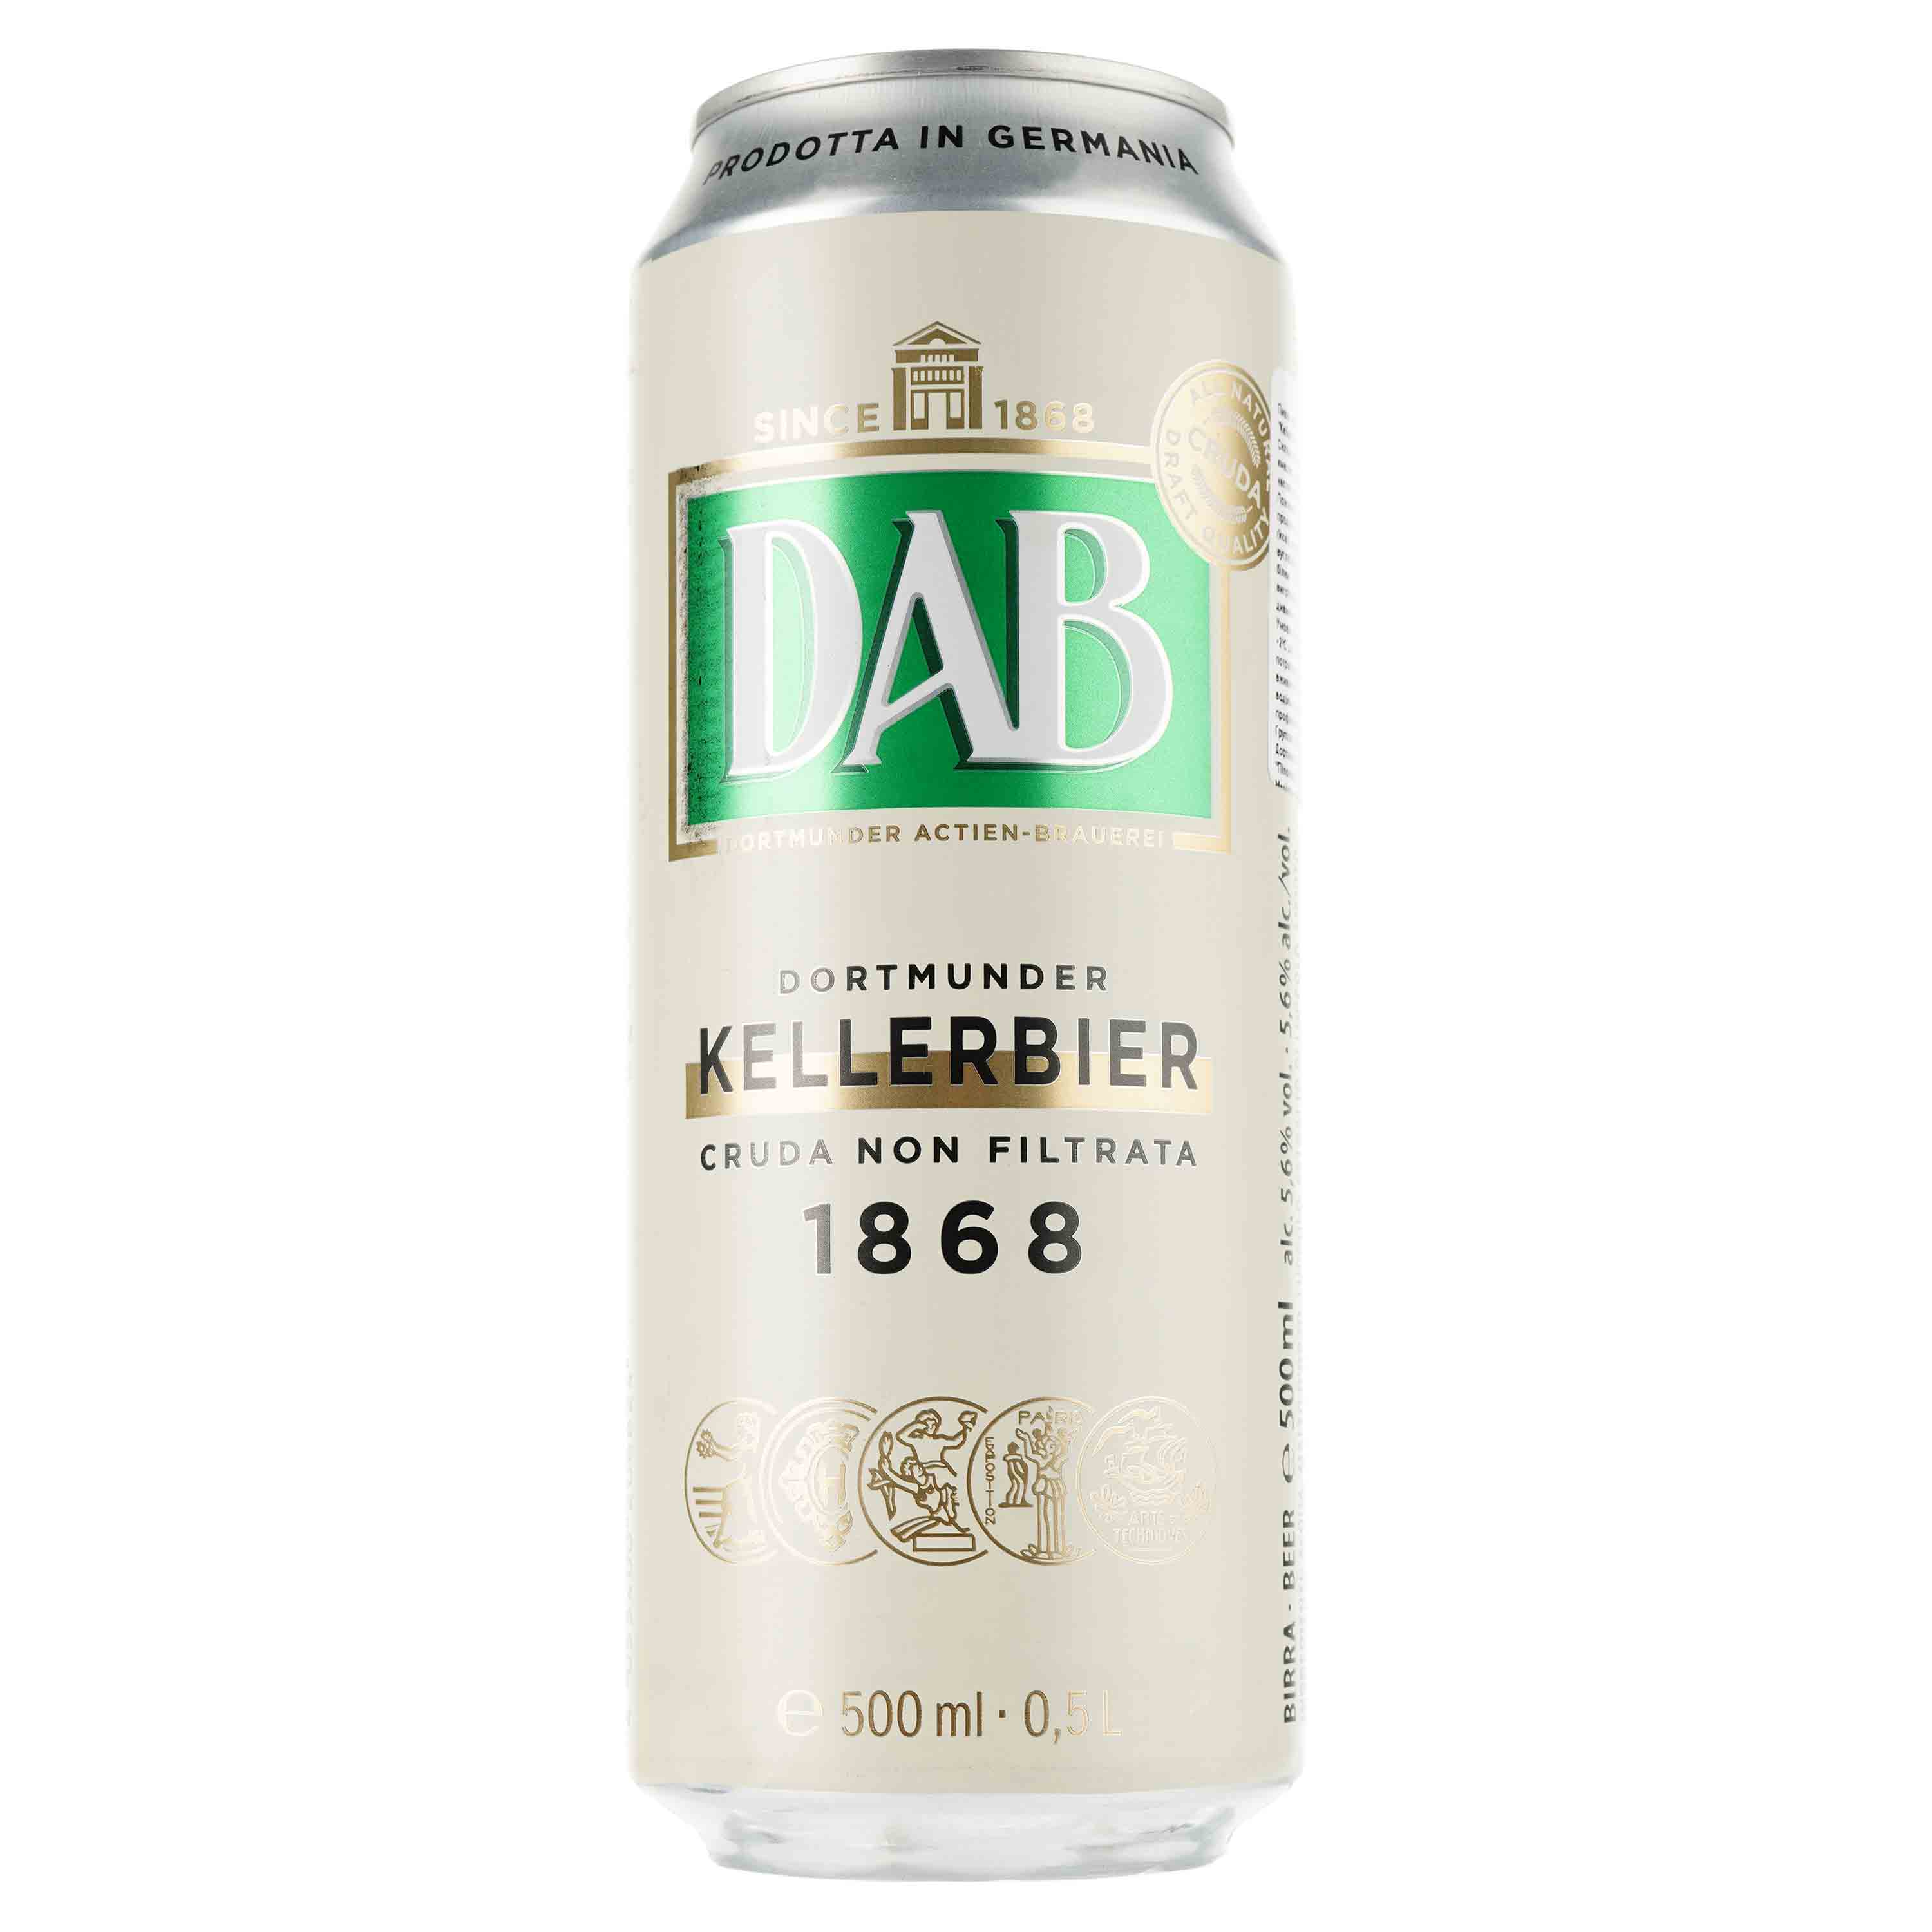 Пиво DAB Kellerbier світле, 5.6%, з/б, 0.5 л - фото 1